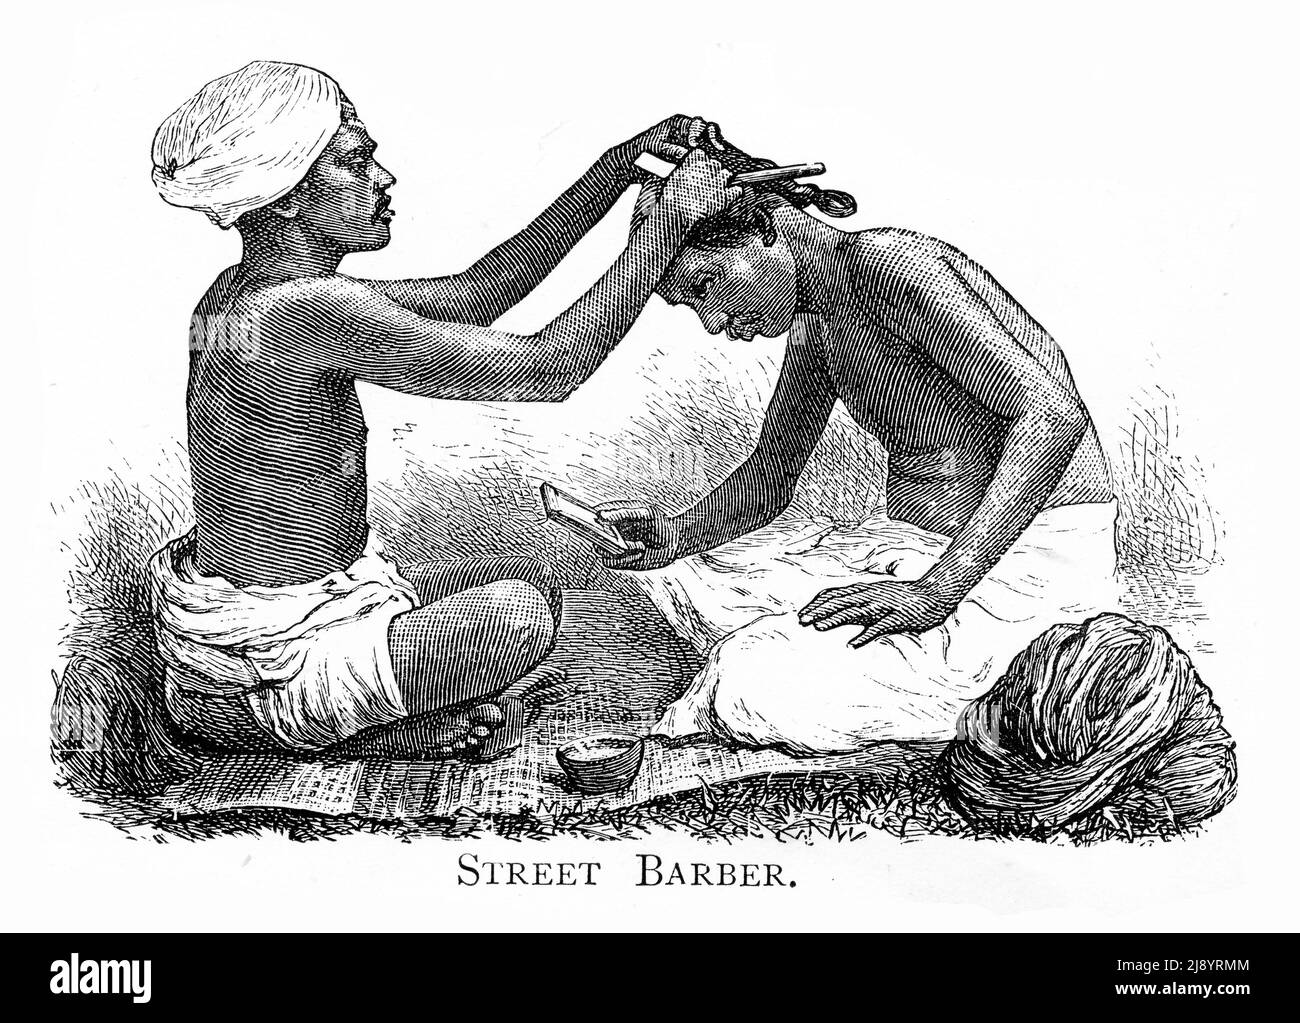 Gravure d'un barbier de rue en Inde, vers 1880 Banque D'Images